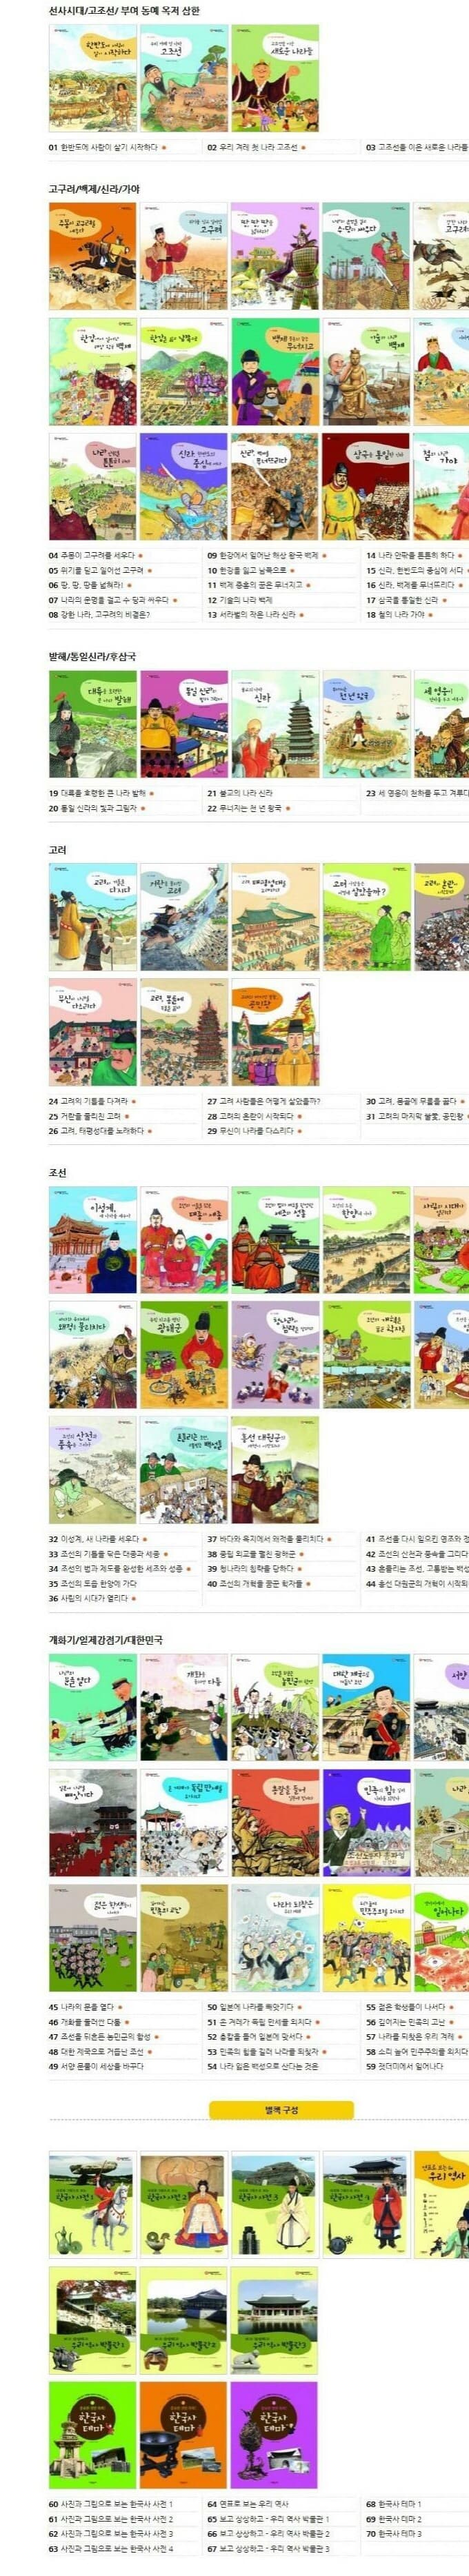 으랏차차 이야기 한국사 최신간새책(미개봉)